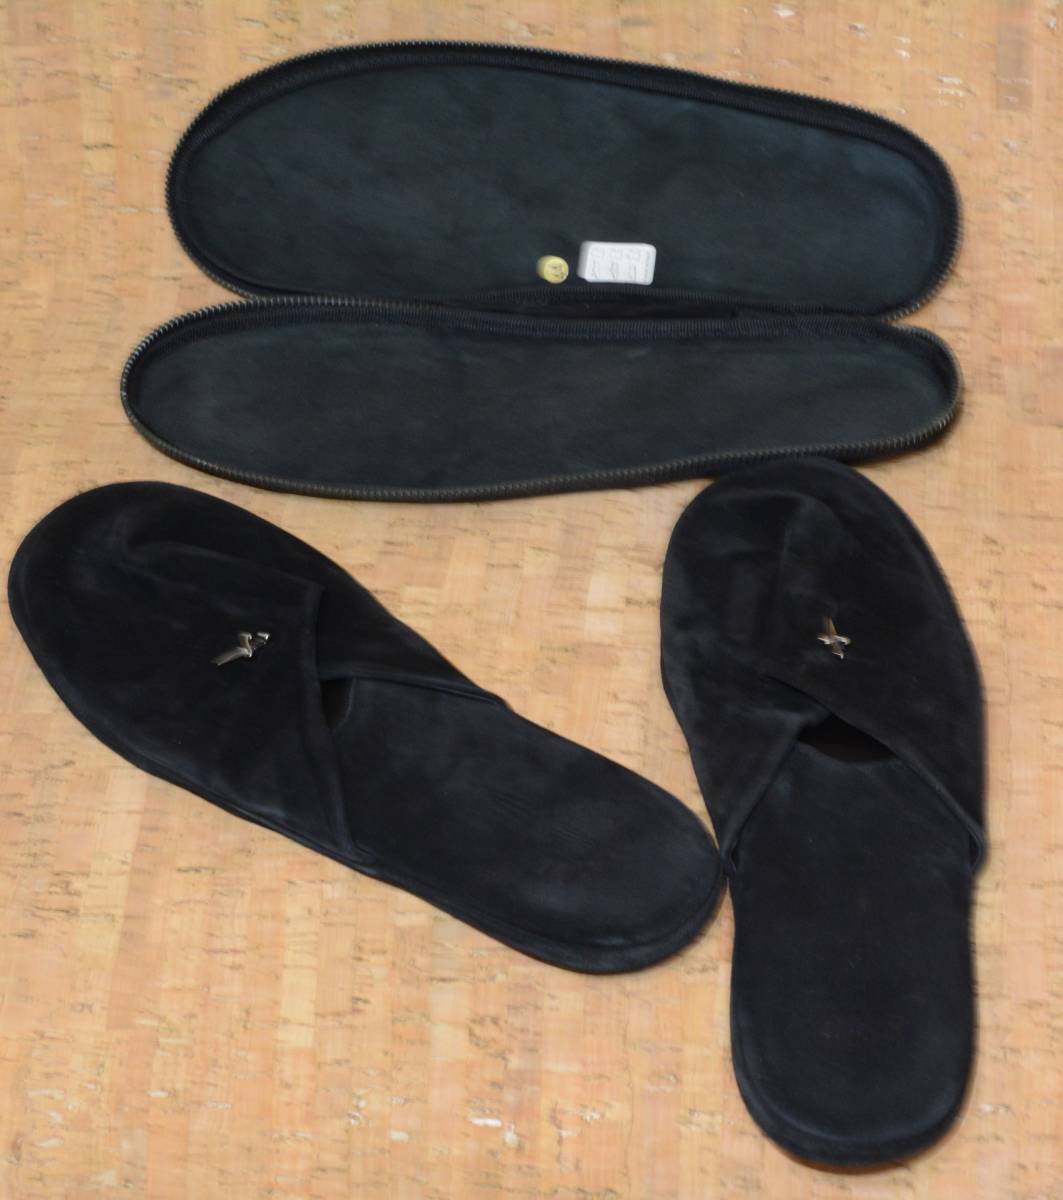  подлинный товар Pachi .tiPACIOTTI раунд застежка-молния место хранения сумка имеется сандалии 44 чёрный мужской салон обувь обувь 